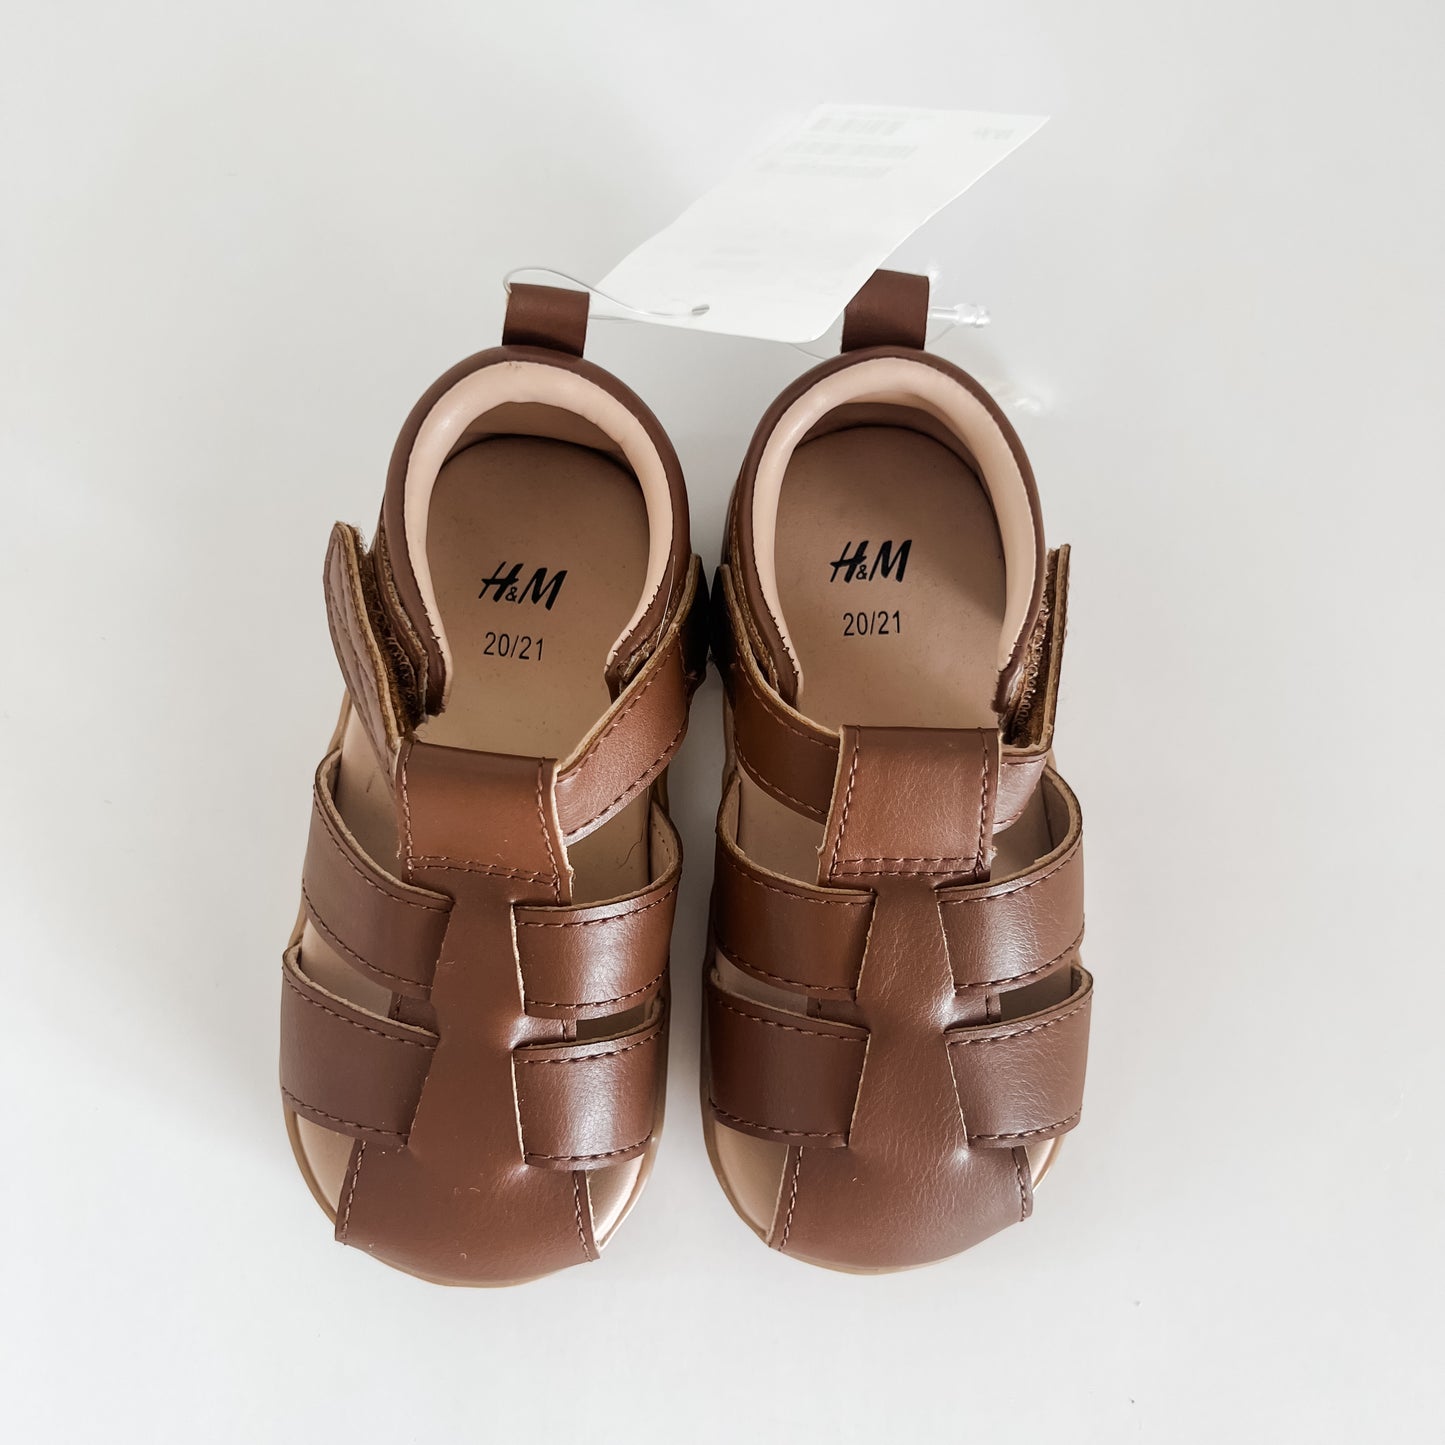 H&M Sandals *NWT*